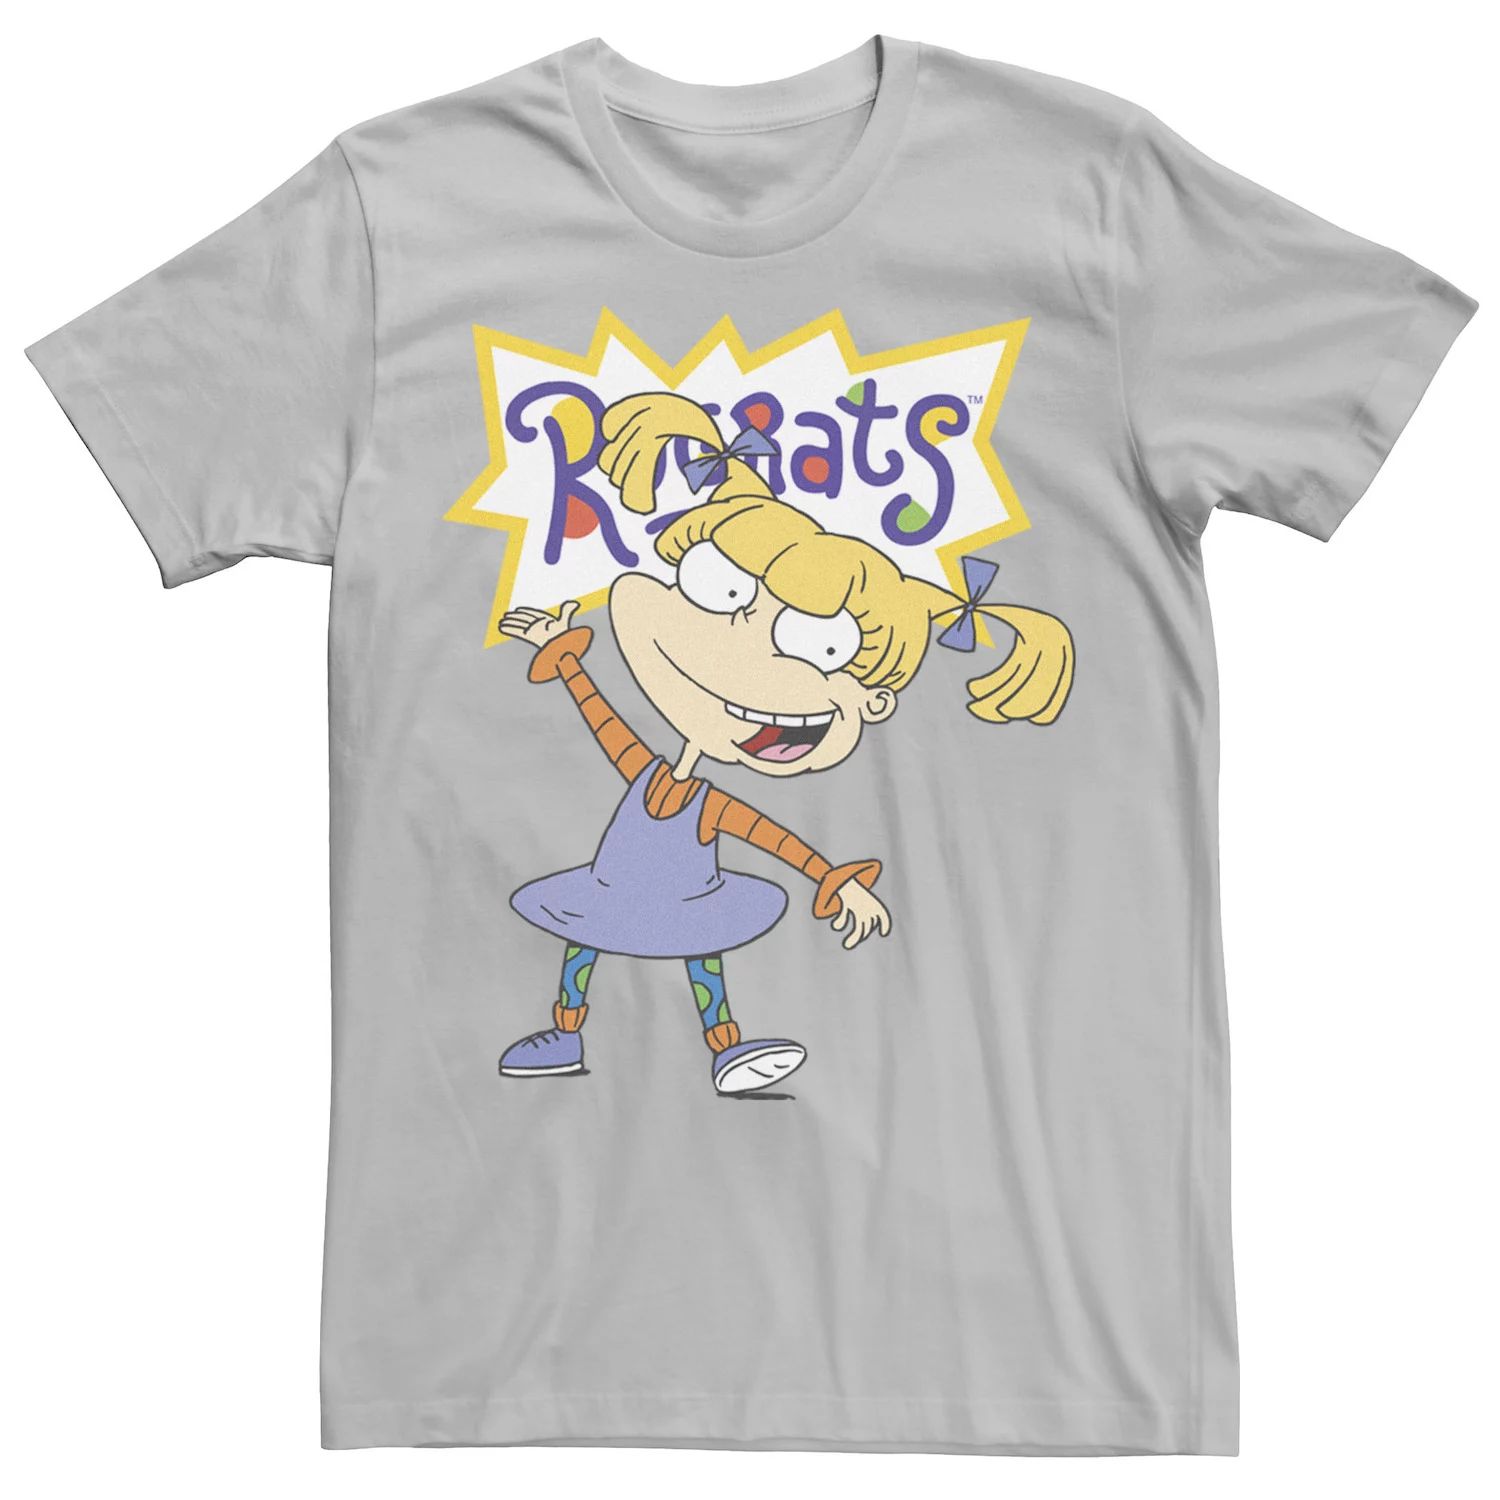 Мужская футболка Rugrats Angelica с простым портретом и рисунком Nickelodeon, серебристый